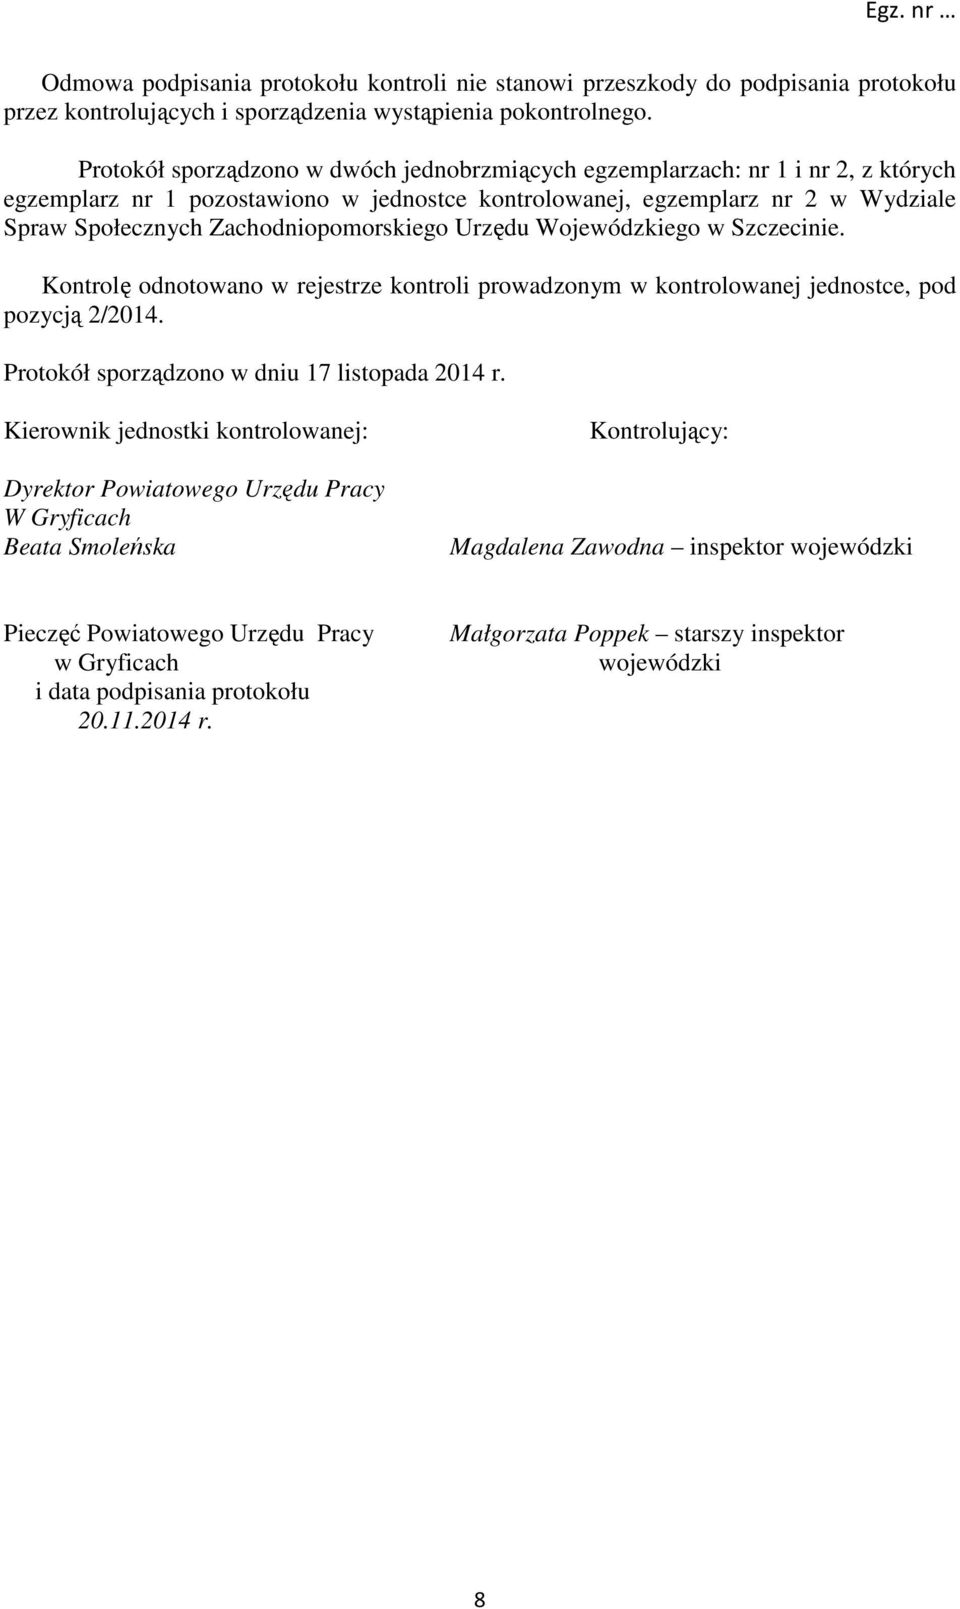 Zachodniopomorskiego Urzędu Wojewódzkiego w Szczecinie. Kontrolę odnotowano w rejestrze kontroli prowadzonym w kontrolowanej jednostce, pod pozycją 2/2014.